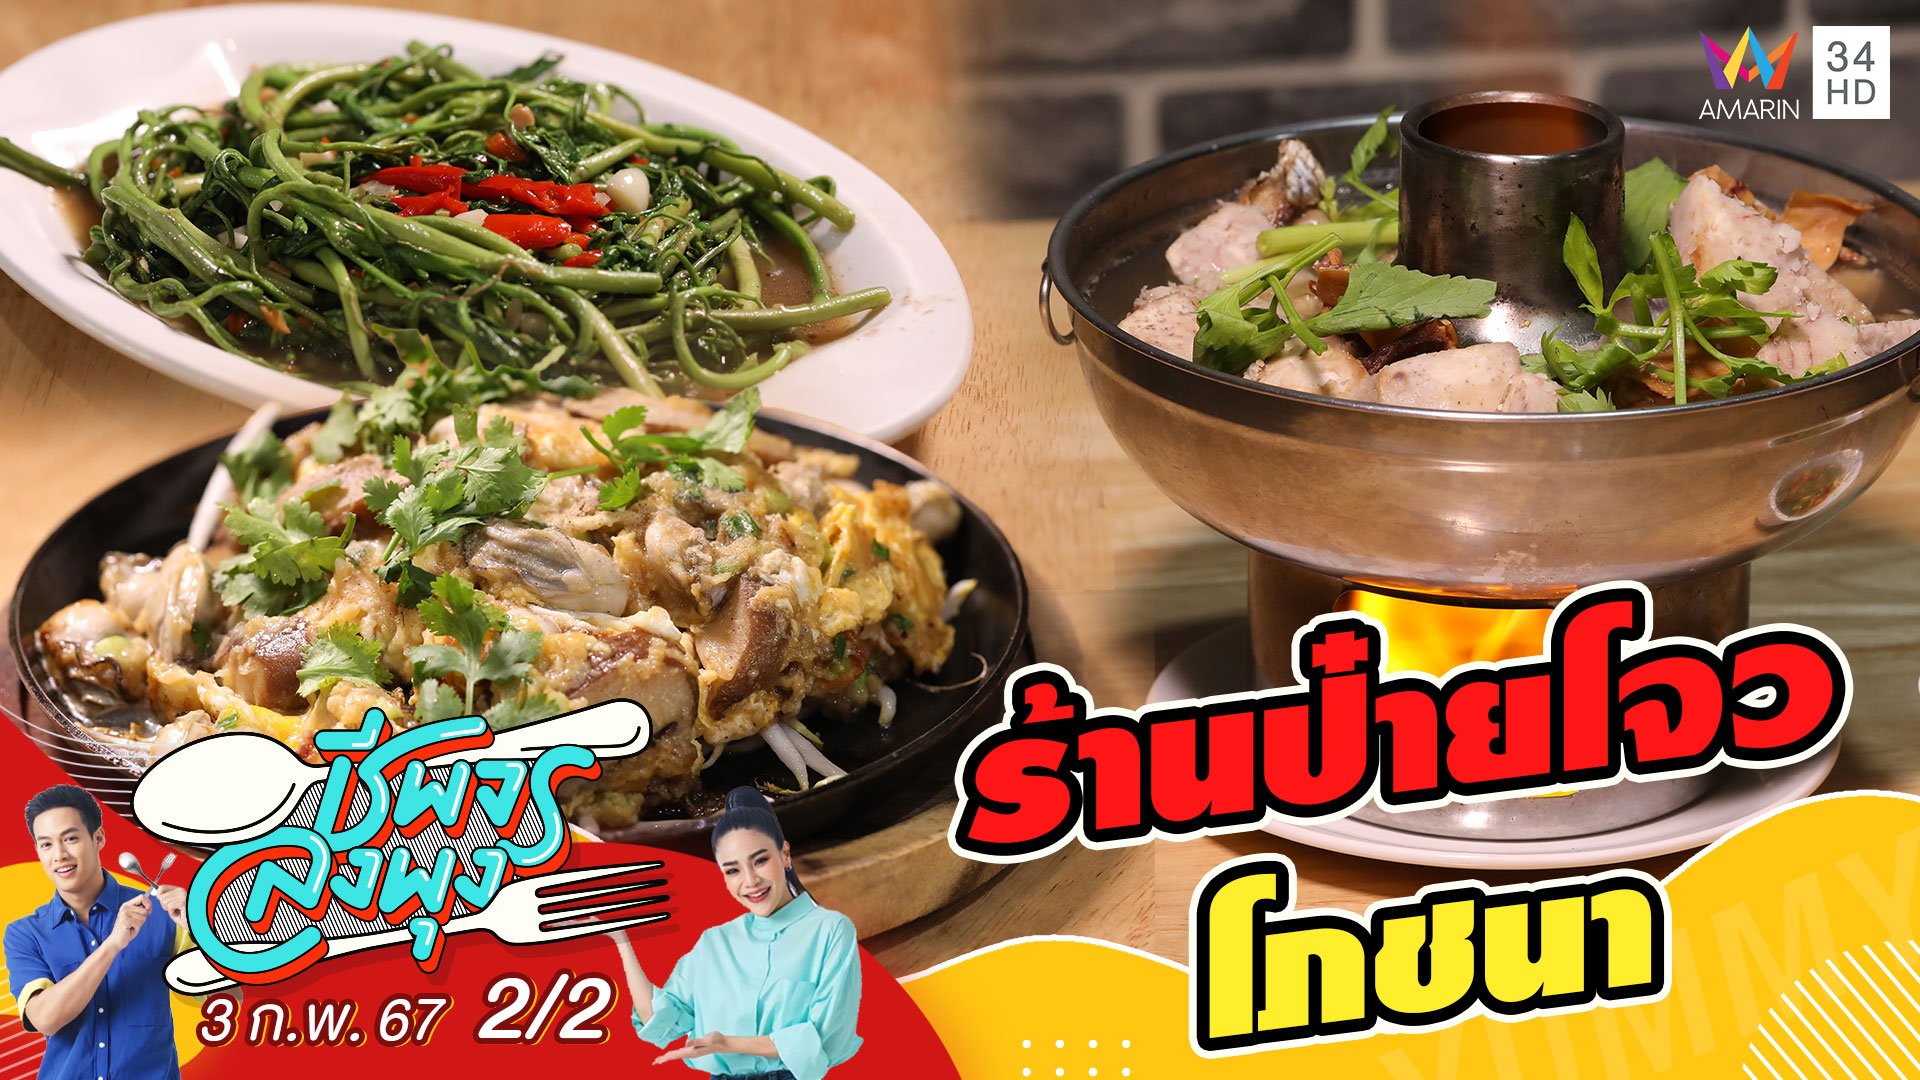 "ร้านป๋ายโจว โภชนา" ร้านอาหารที่มีหลากหลายเมนูให้เลือกทาน | ชีพจรลงพุง | 3 ก.พ. 67 (2/2) | AMARIN TVHD34